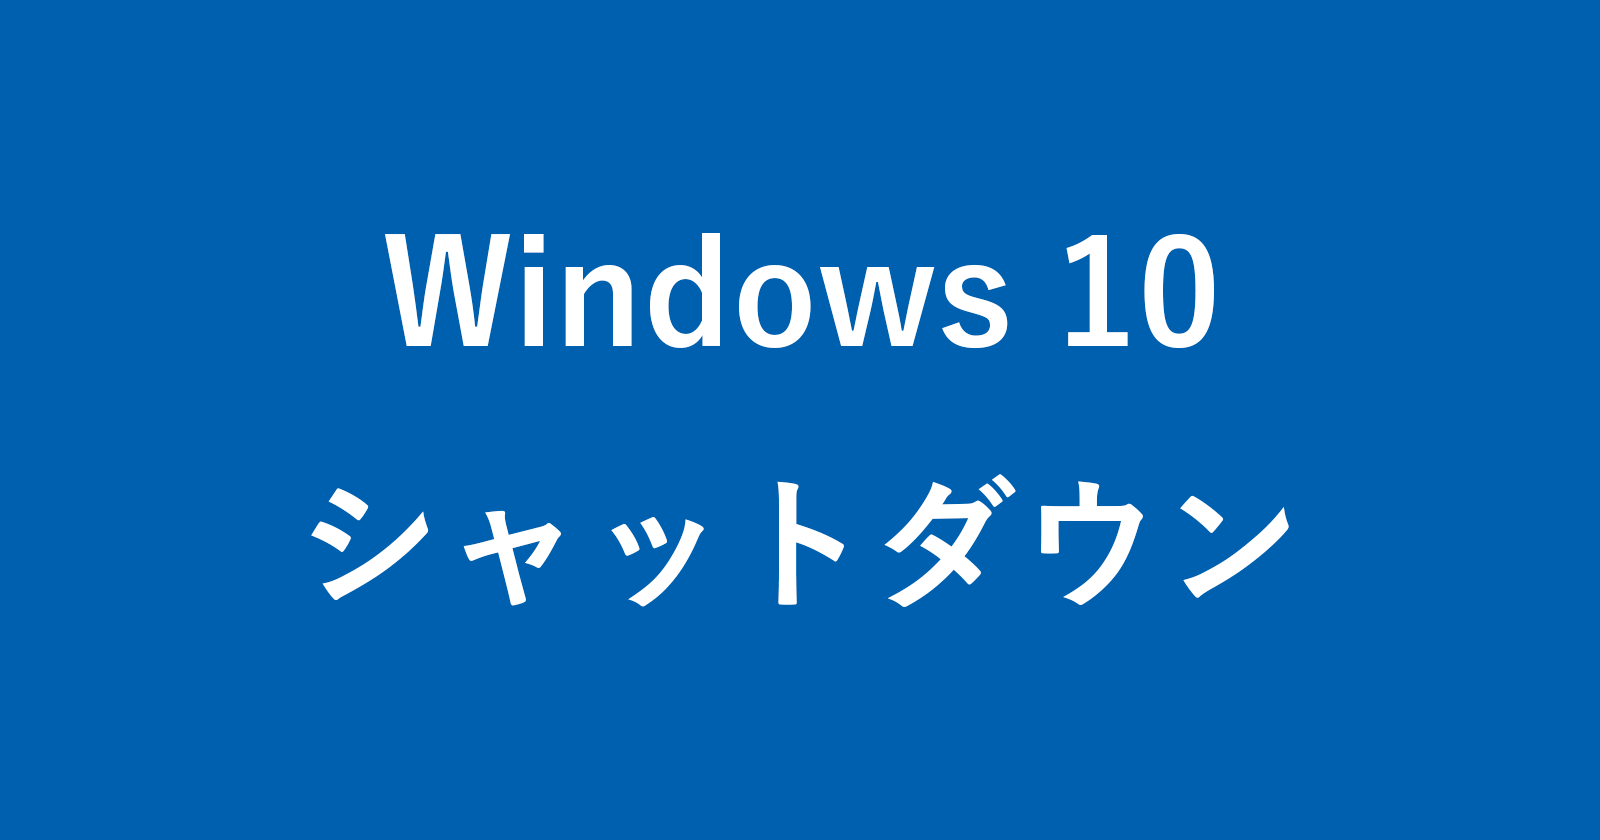 windows 10 shutdown